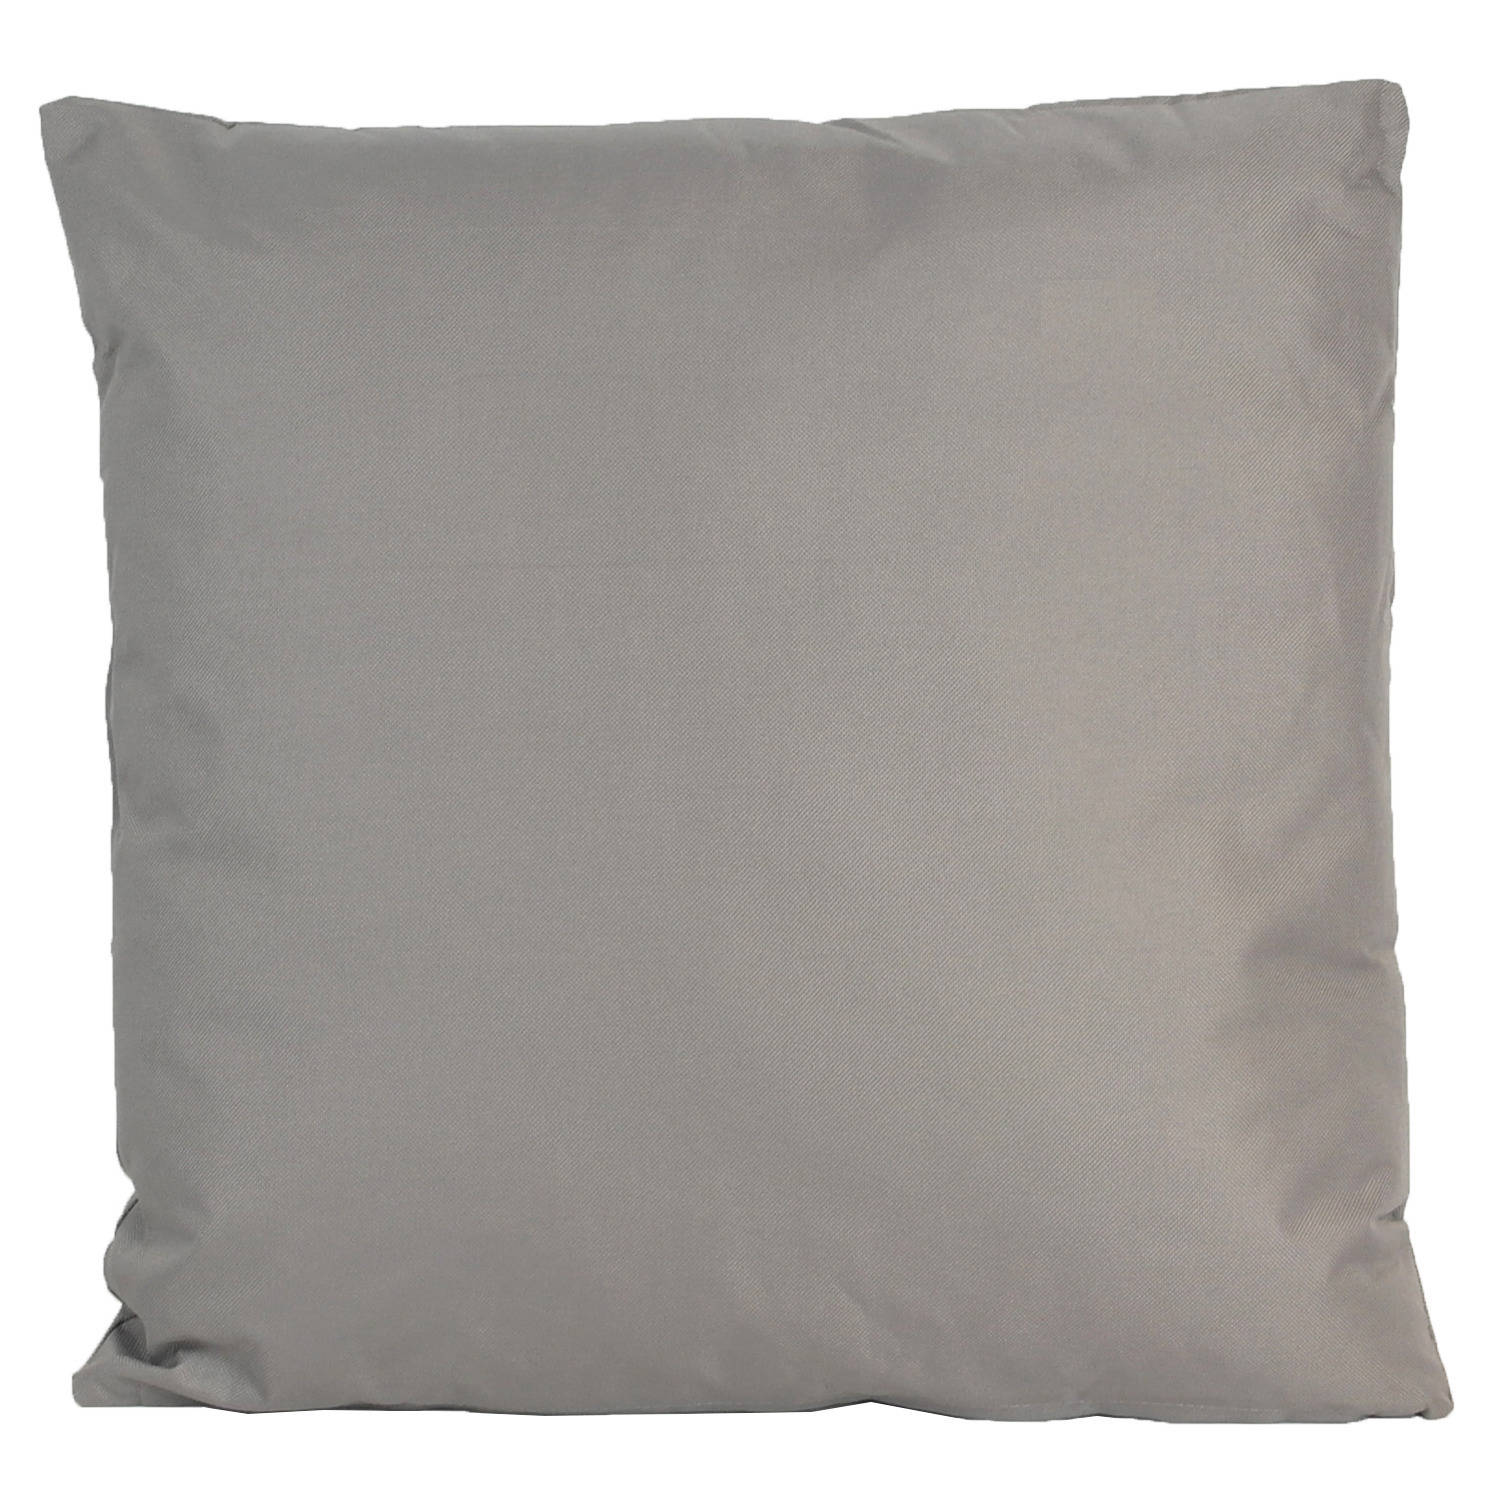 1x Grote bank/sier kussens voor binnen en buiten in de kleur grijs 60 x 60 cm - Sierkussens